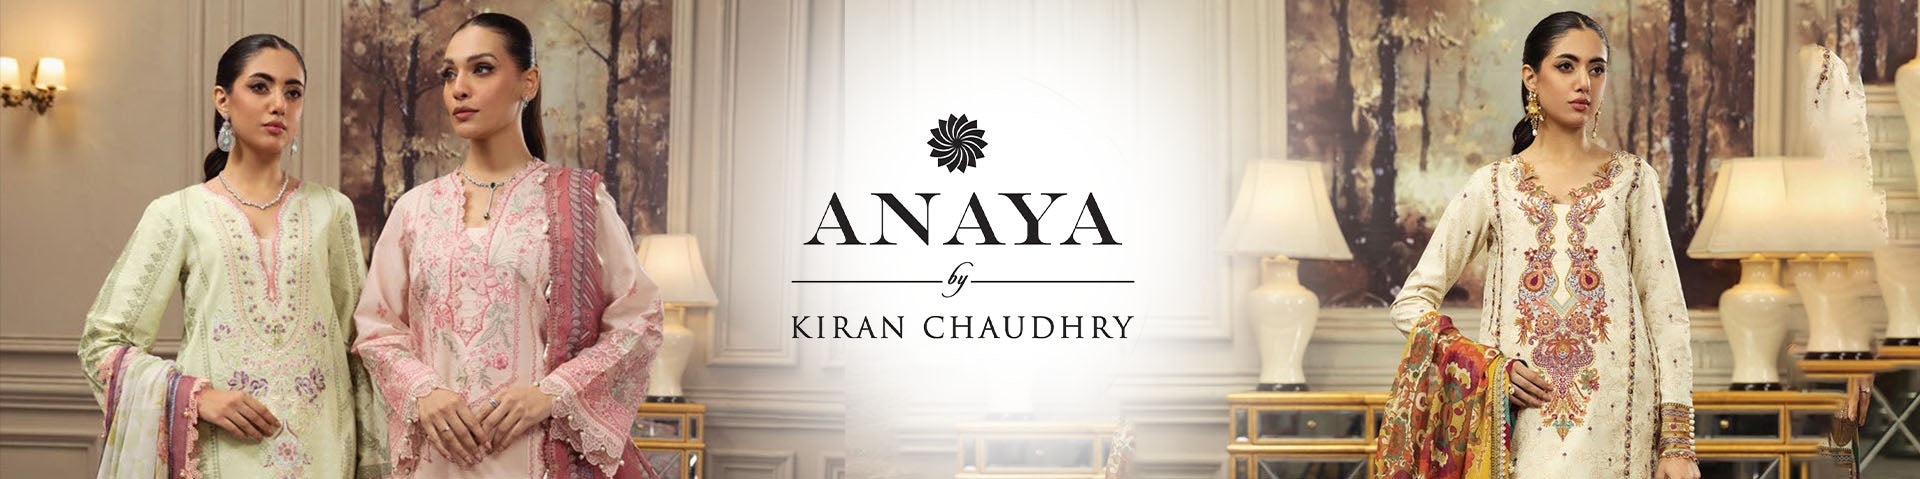 Anaya by kiran chaudhry